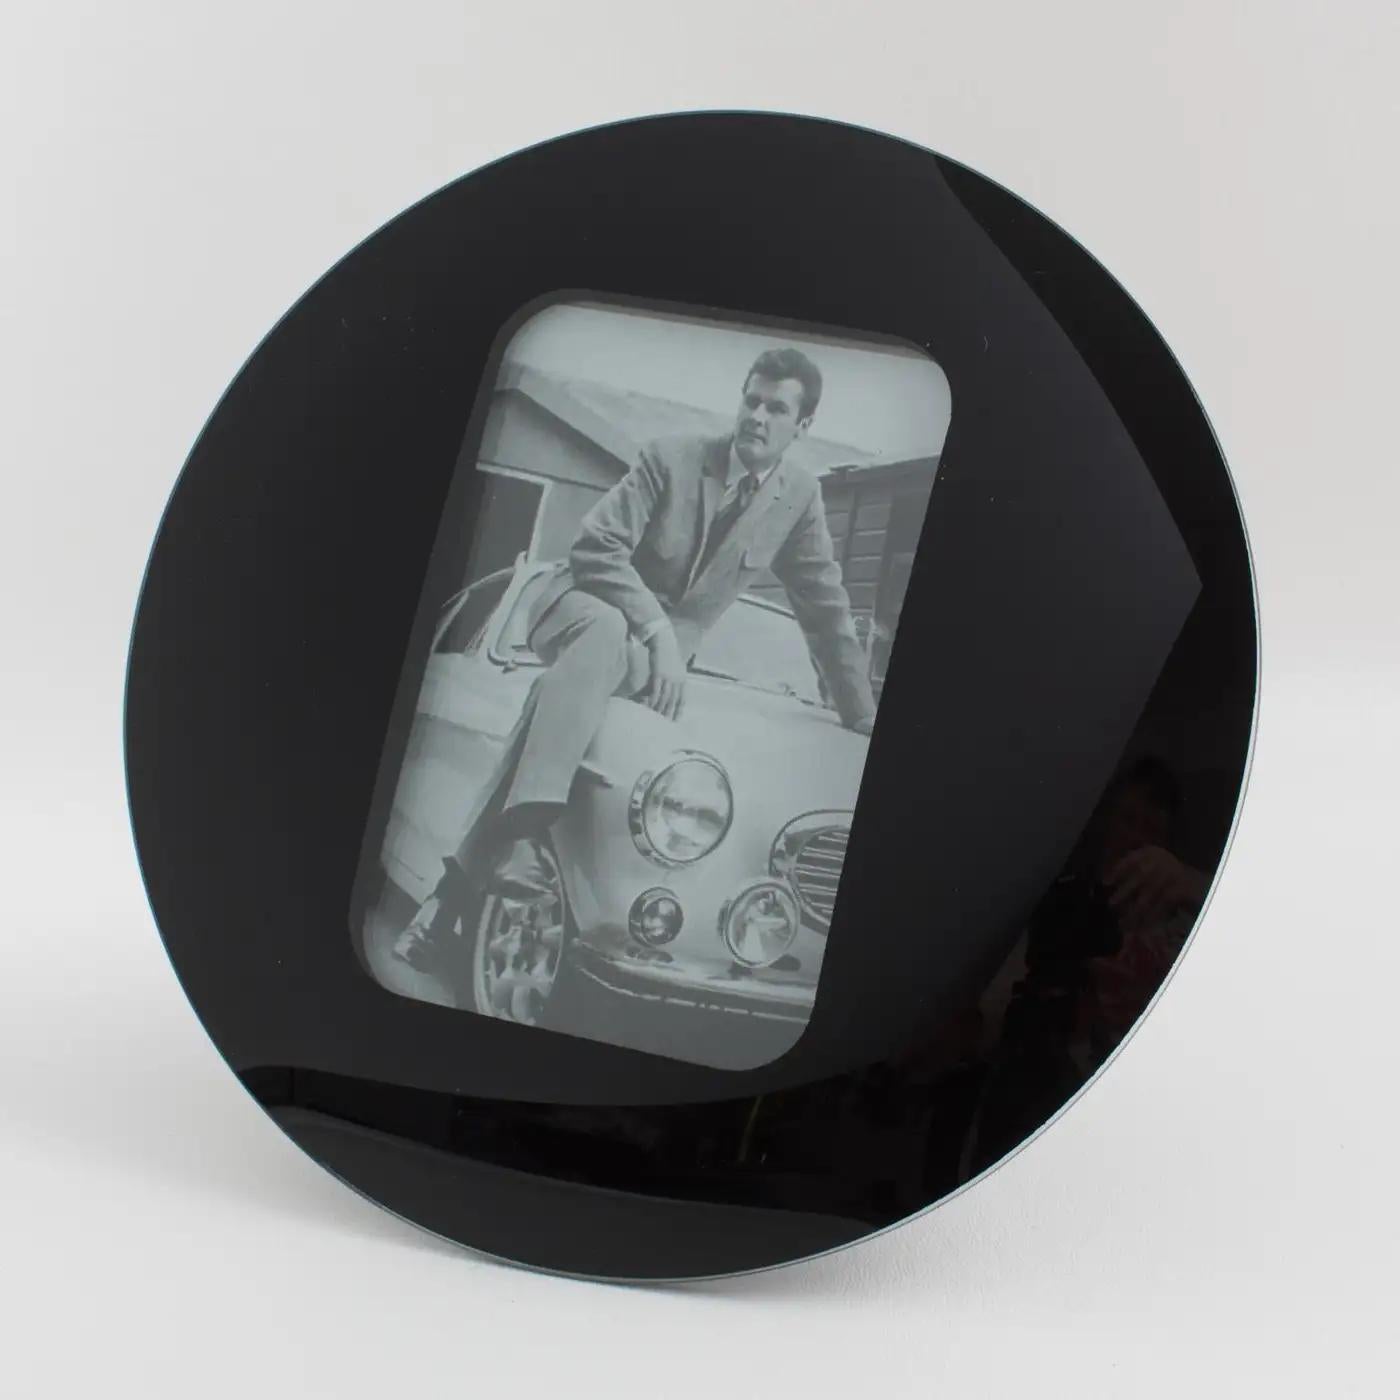 Dieser schöne Space Age Bilderrahmen aus schwarzem Glas wurde in den 1960er Jahren hergestellt. Das Stück hat ein rundes, gewölbtes Design mit kinetischem Effekt. Die Staffelei und die Rückseite sind mit schwarzem Wildlederpapier bezogen. Der